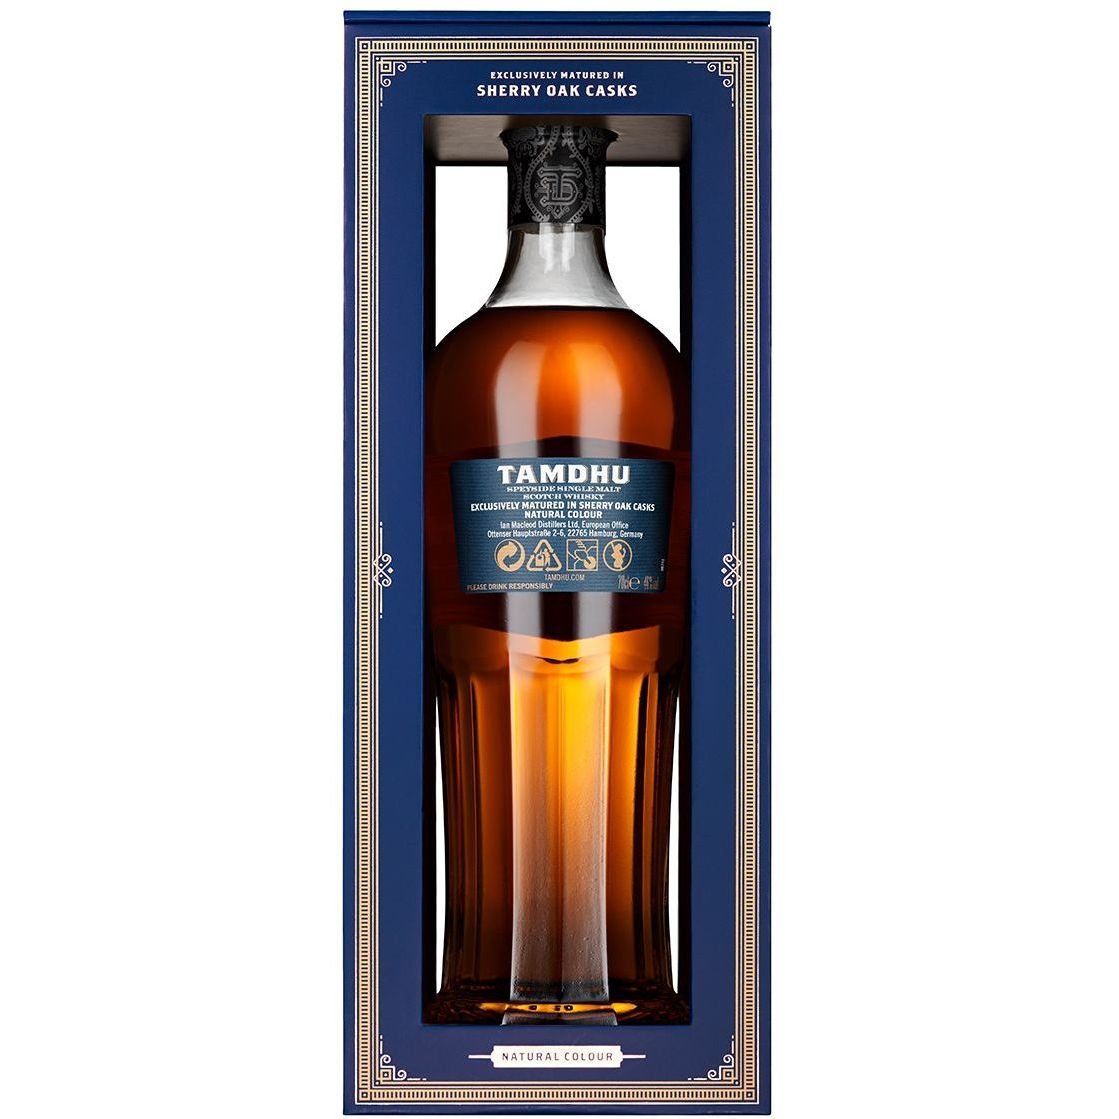 Віскі Tamdhu 15 yo Single Malt Scotch Whisky 46% 0.7 л, в подарунковій упаковці - фото 2